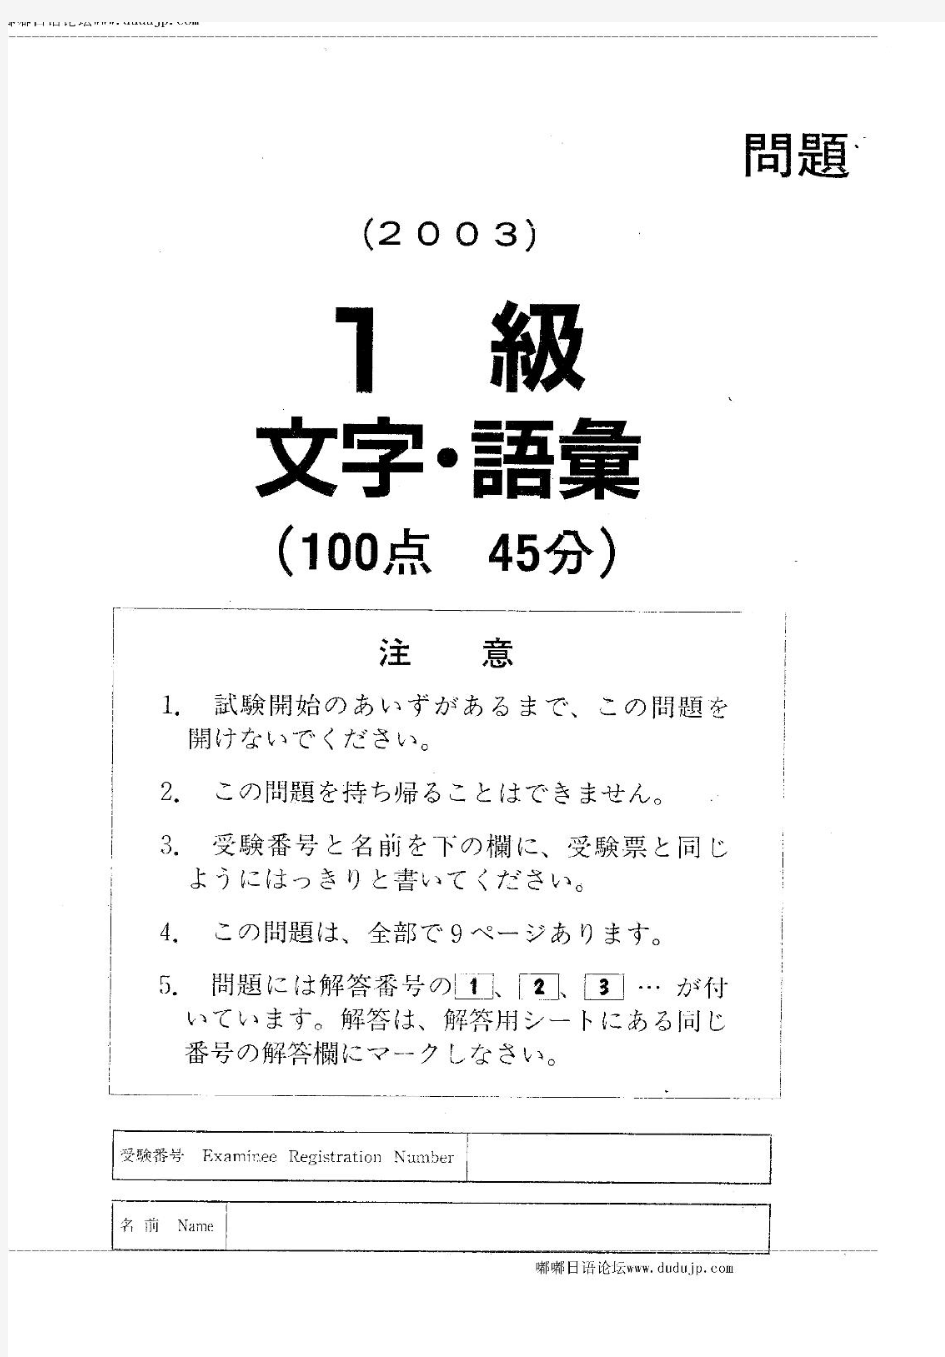 日语能力考试1级真题及备考资料-2003年日语能力考试一级真题